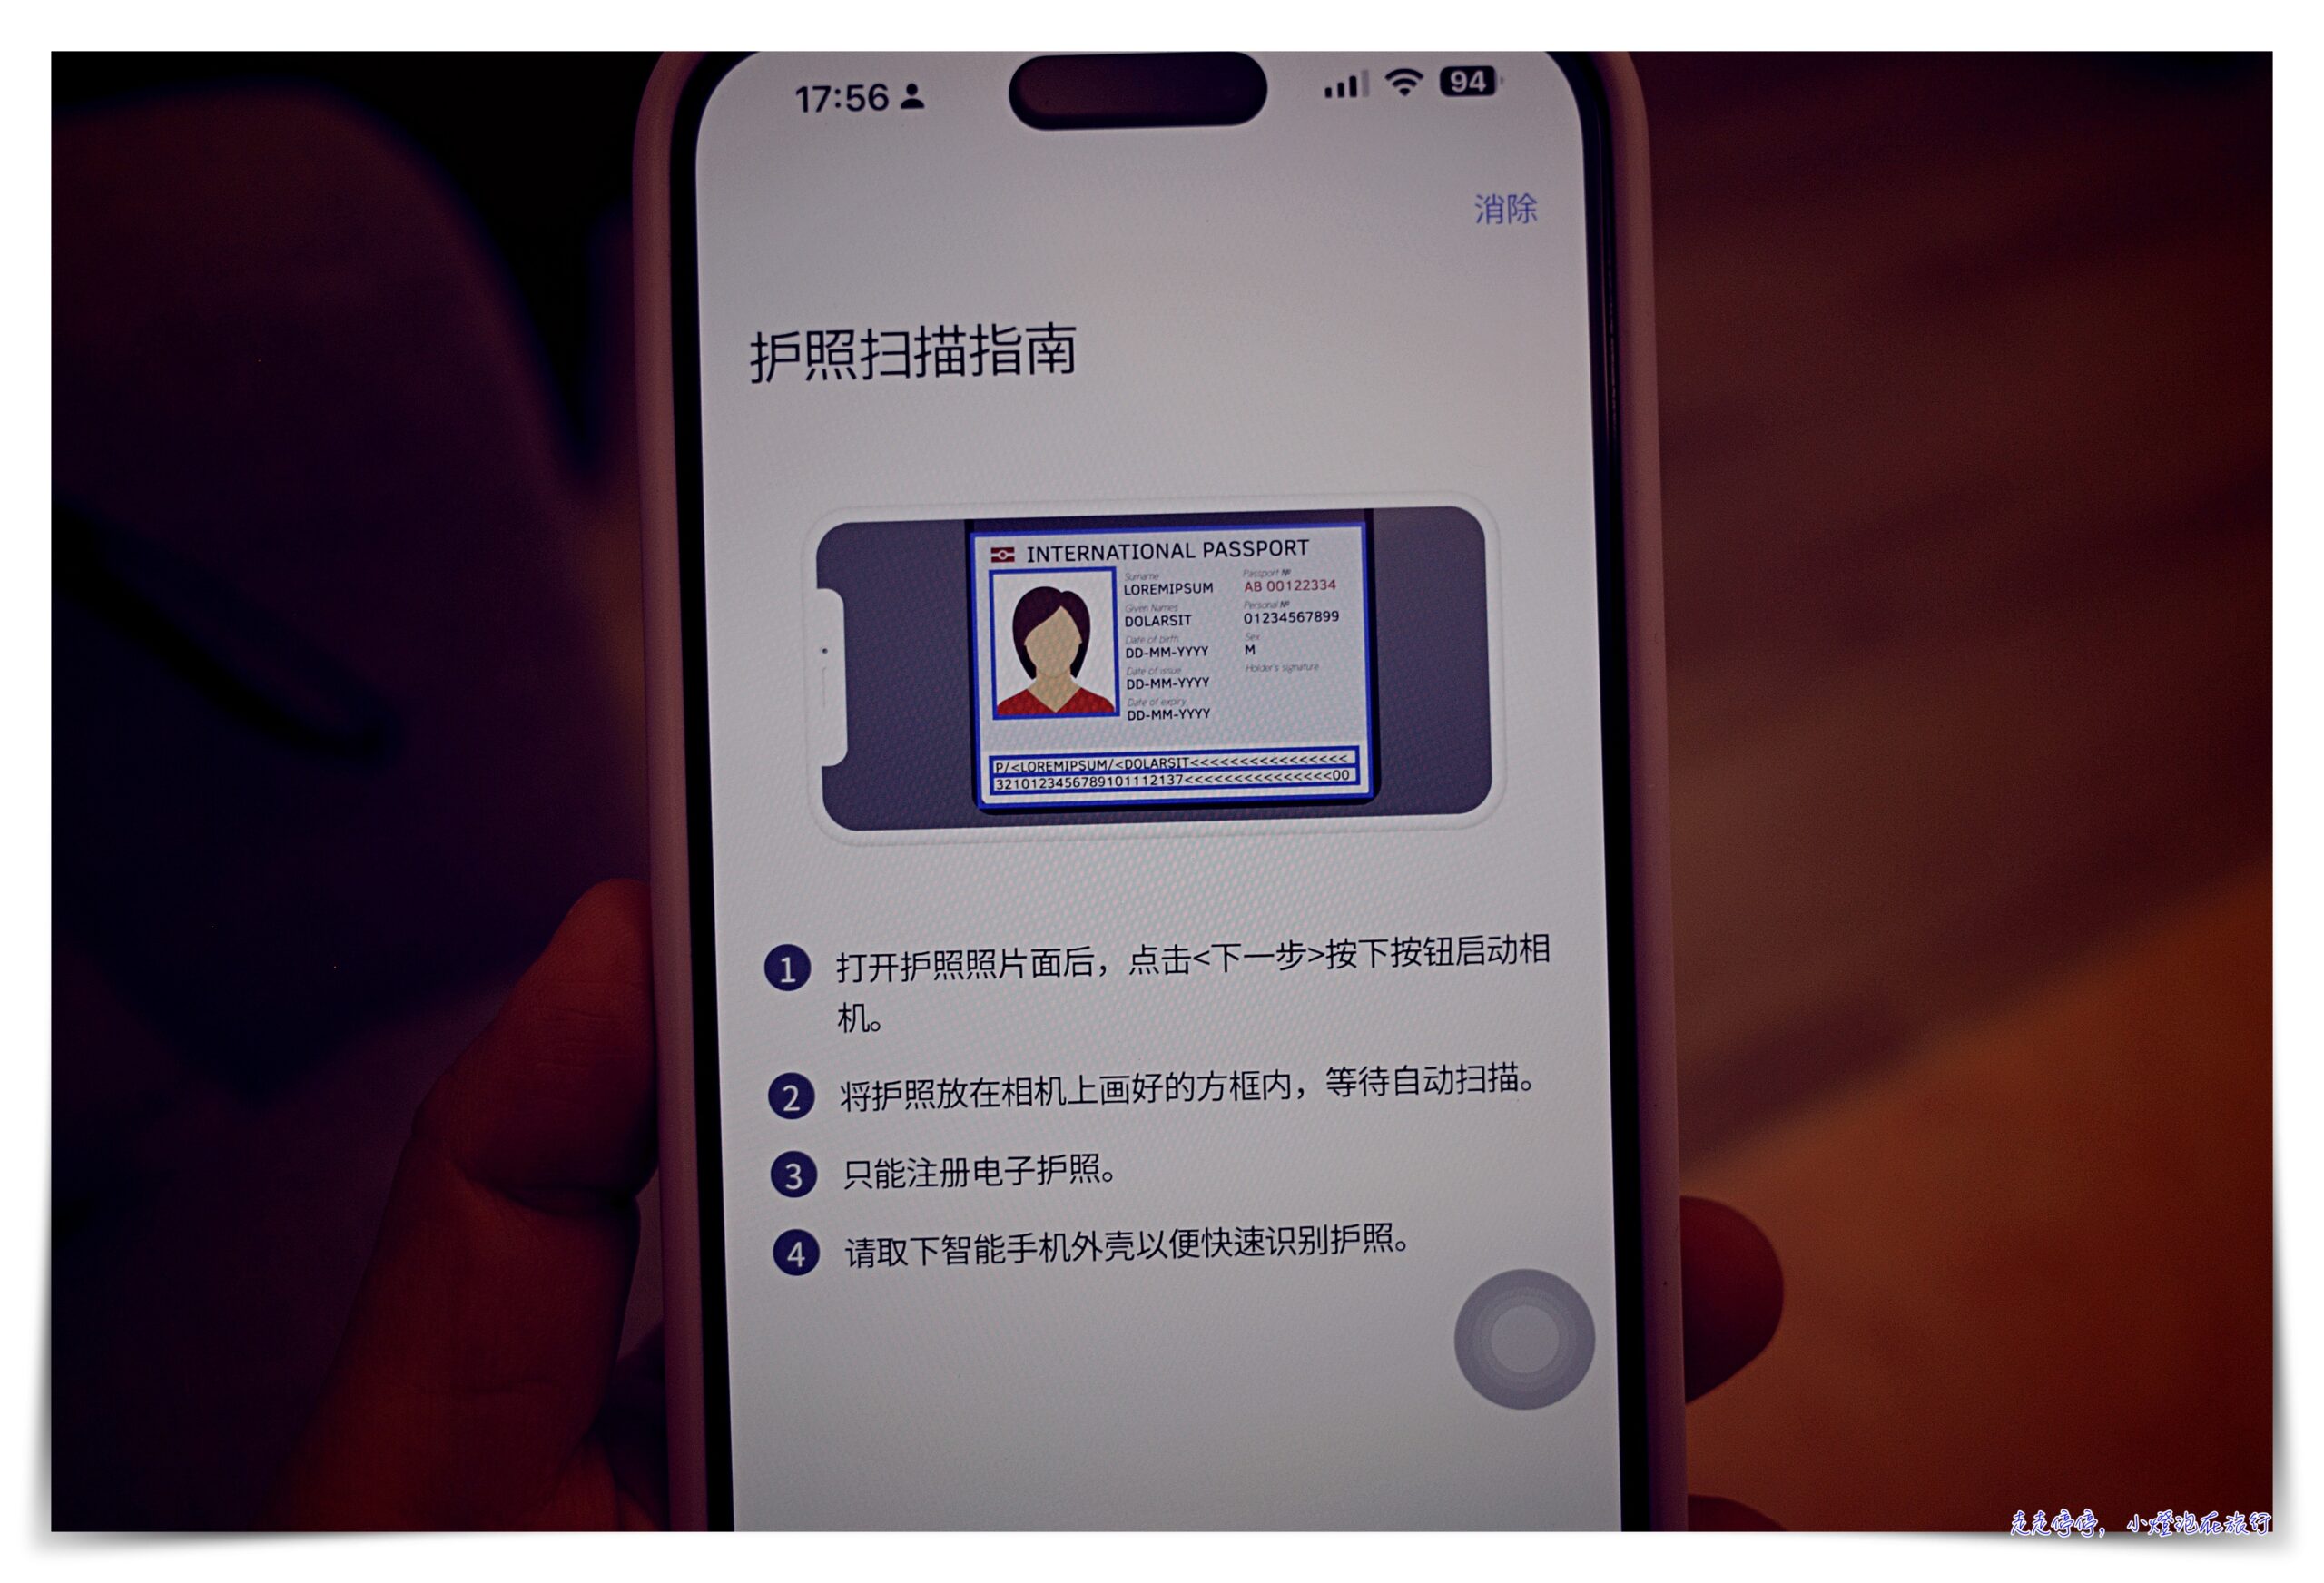 韓國出境自動｜「SmartPass」智能出境服務註冊，可供快速離境通關～韓國出境超強app  ICN SMART PASS